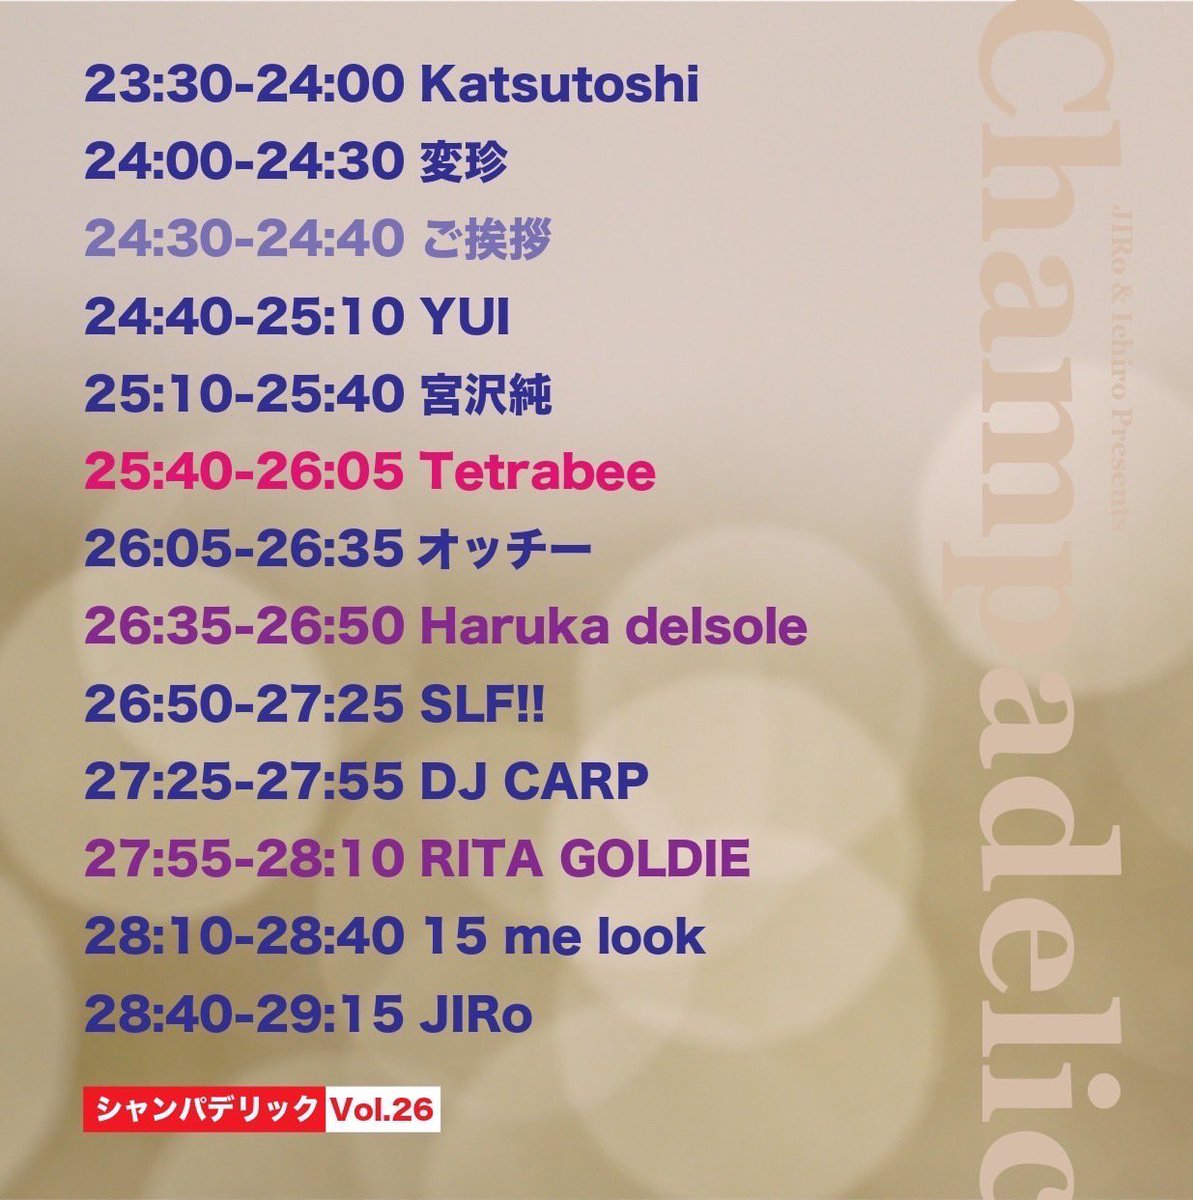 🥂🌟タイムテーブル解禁 ❣️🌈 2023.12.23(SAT) @渋谷UNDER DEER Lounge Ticket : ¥2000(with 1D) クリスマスイブイブ🎄 皆んなで乾杯しましょう！！ #Tetrabee #テトラビー #Champadelic